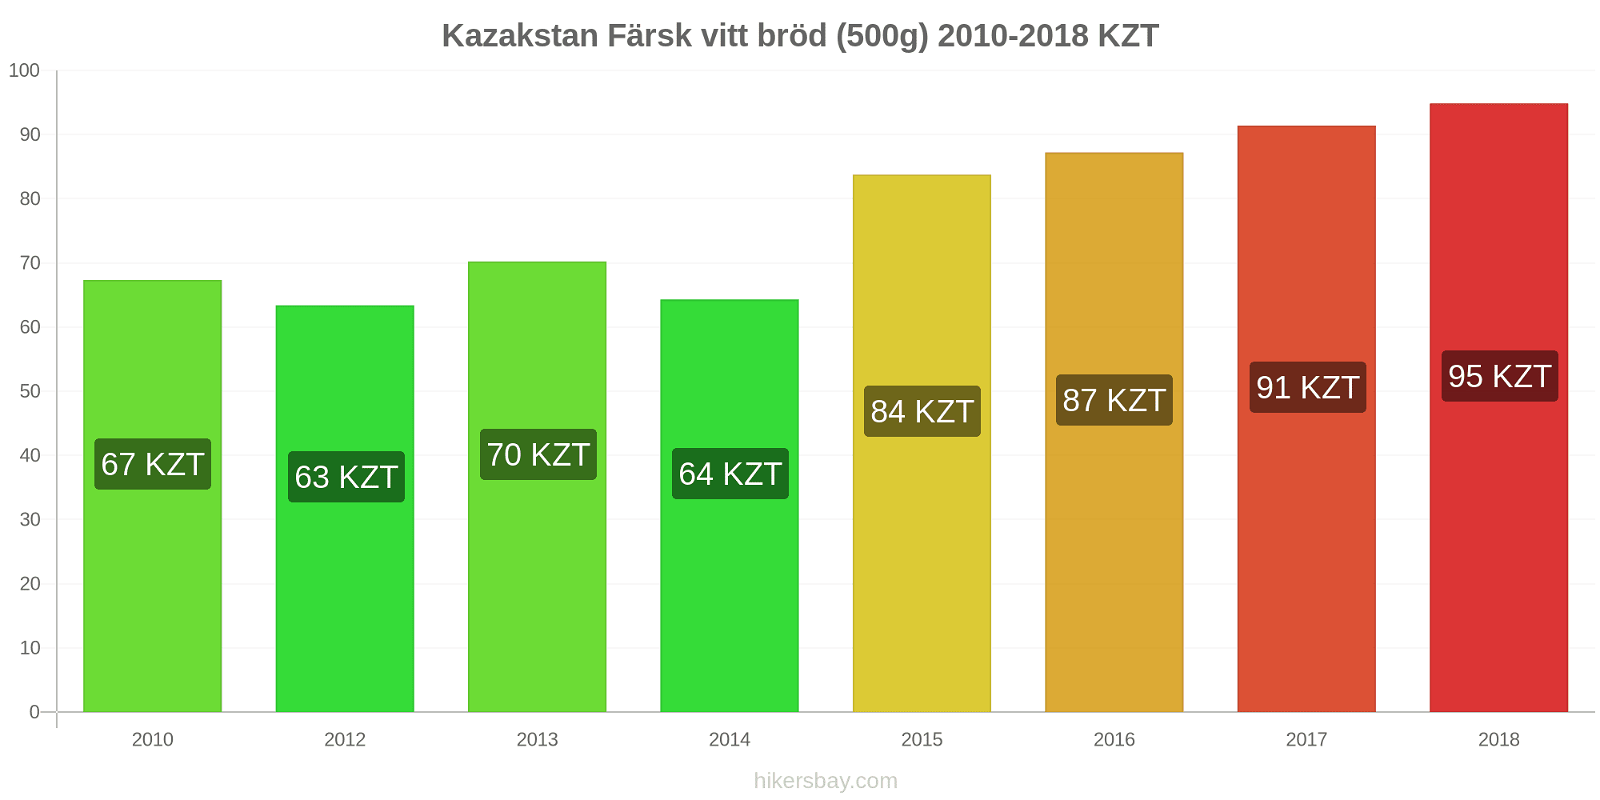 Kazakstan prisändringar Färsk vitt bröd (500g) hikersbay.com